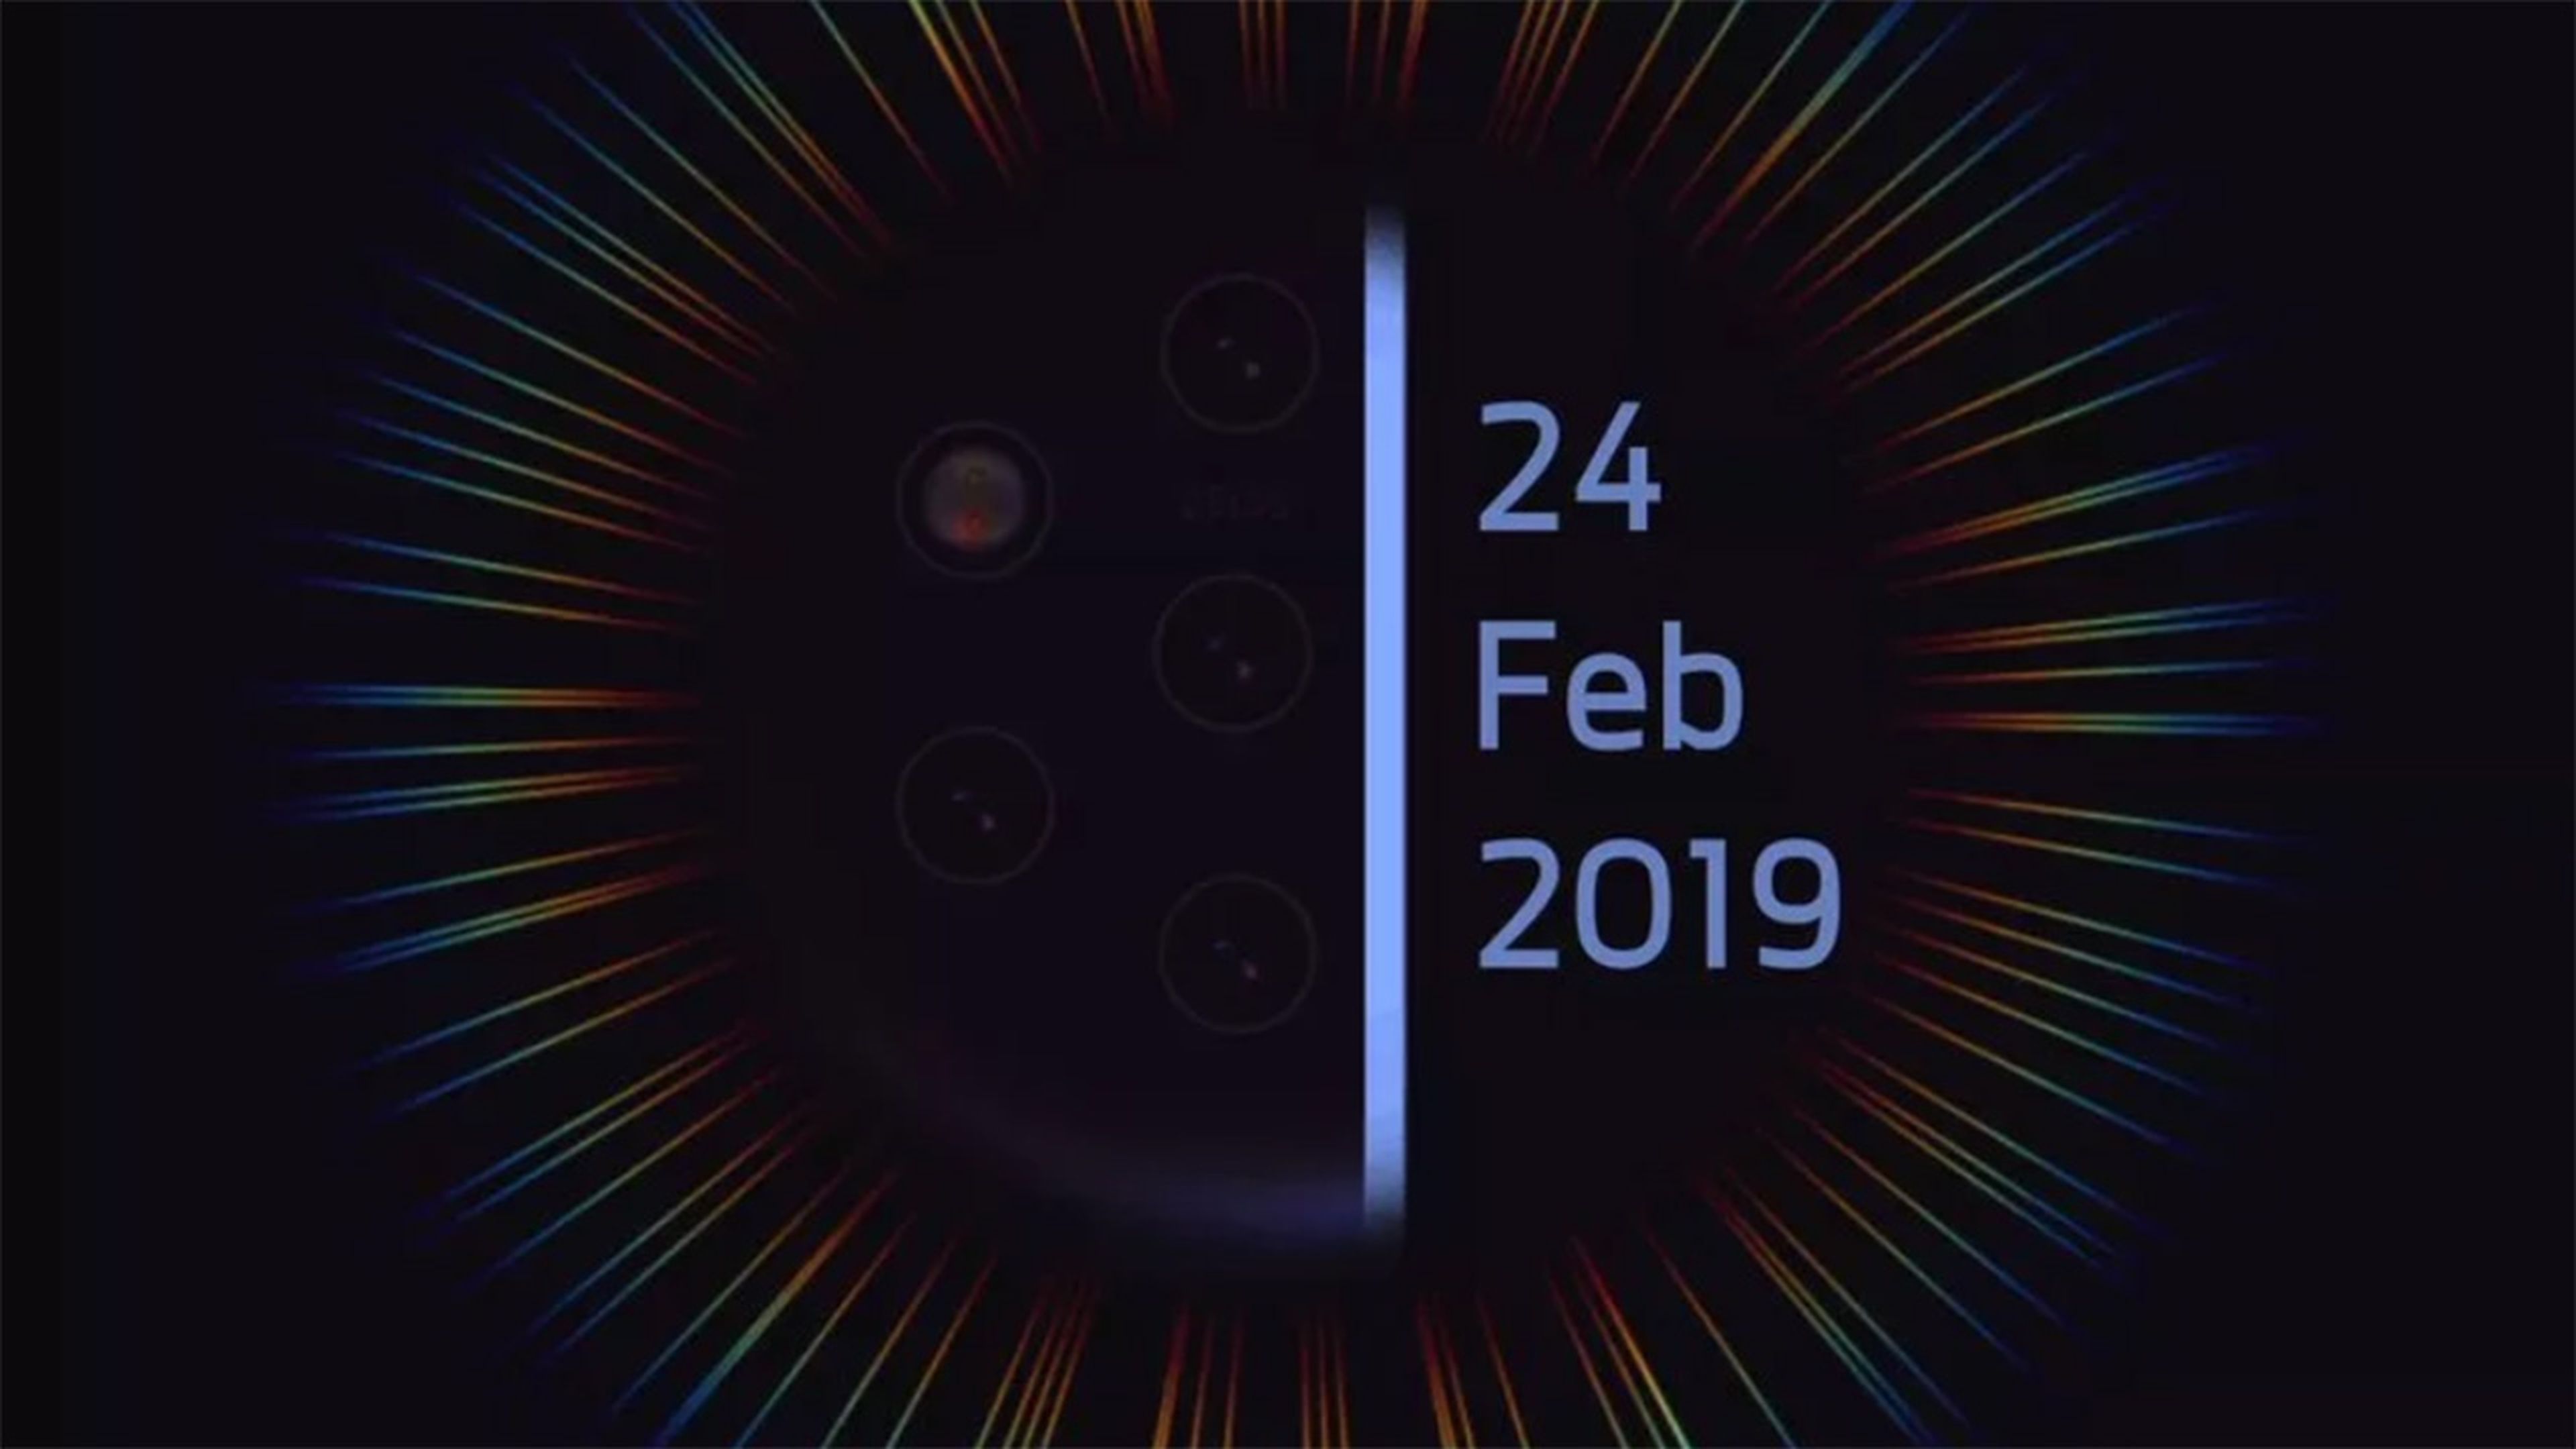 Nokia 9 MWC 2019